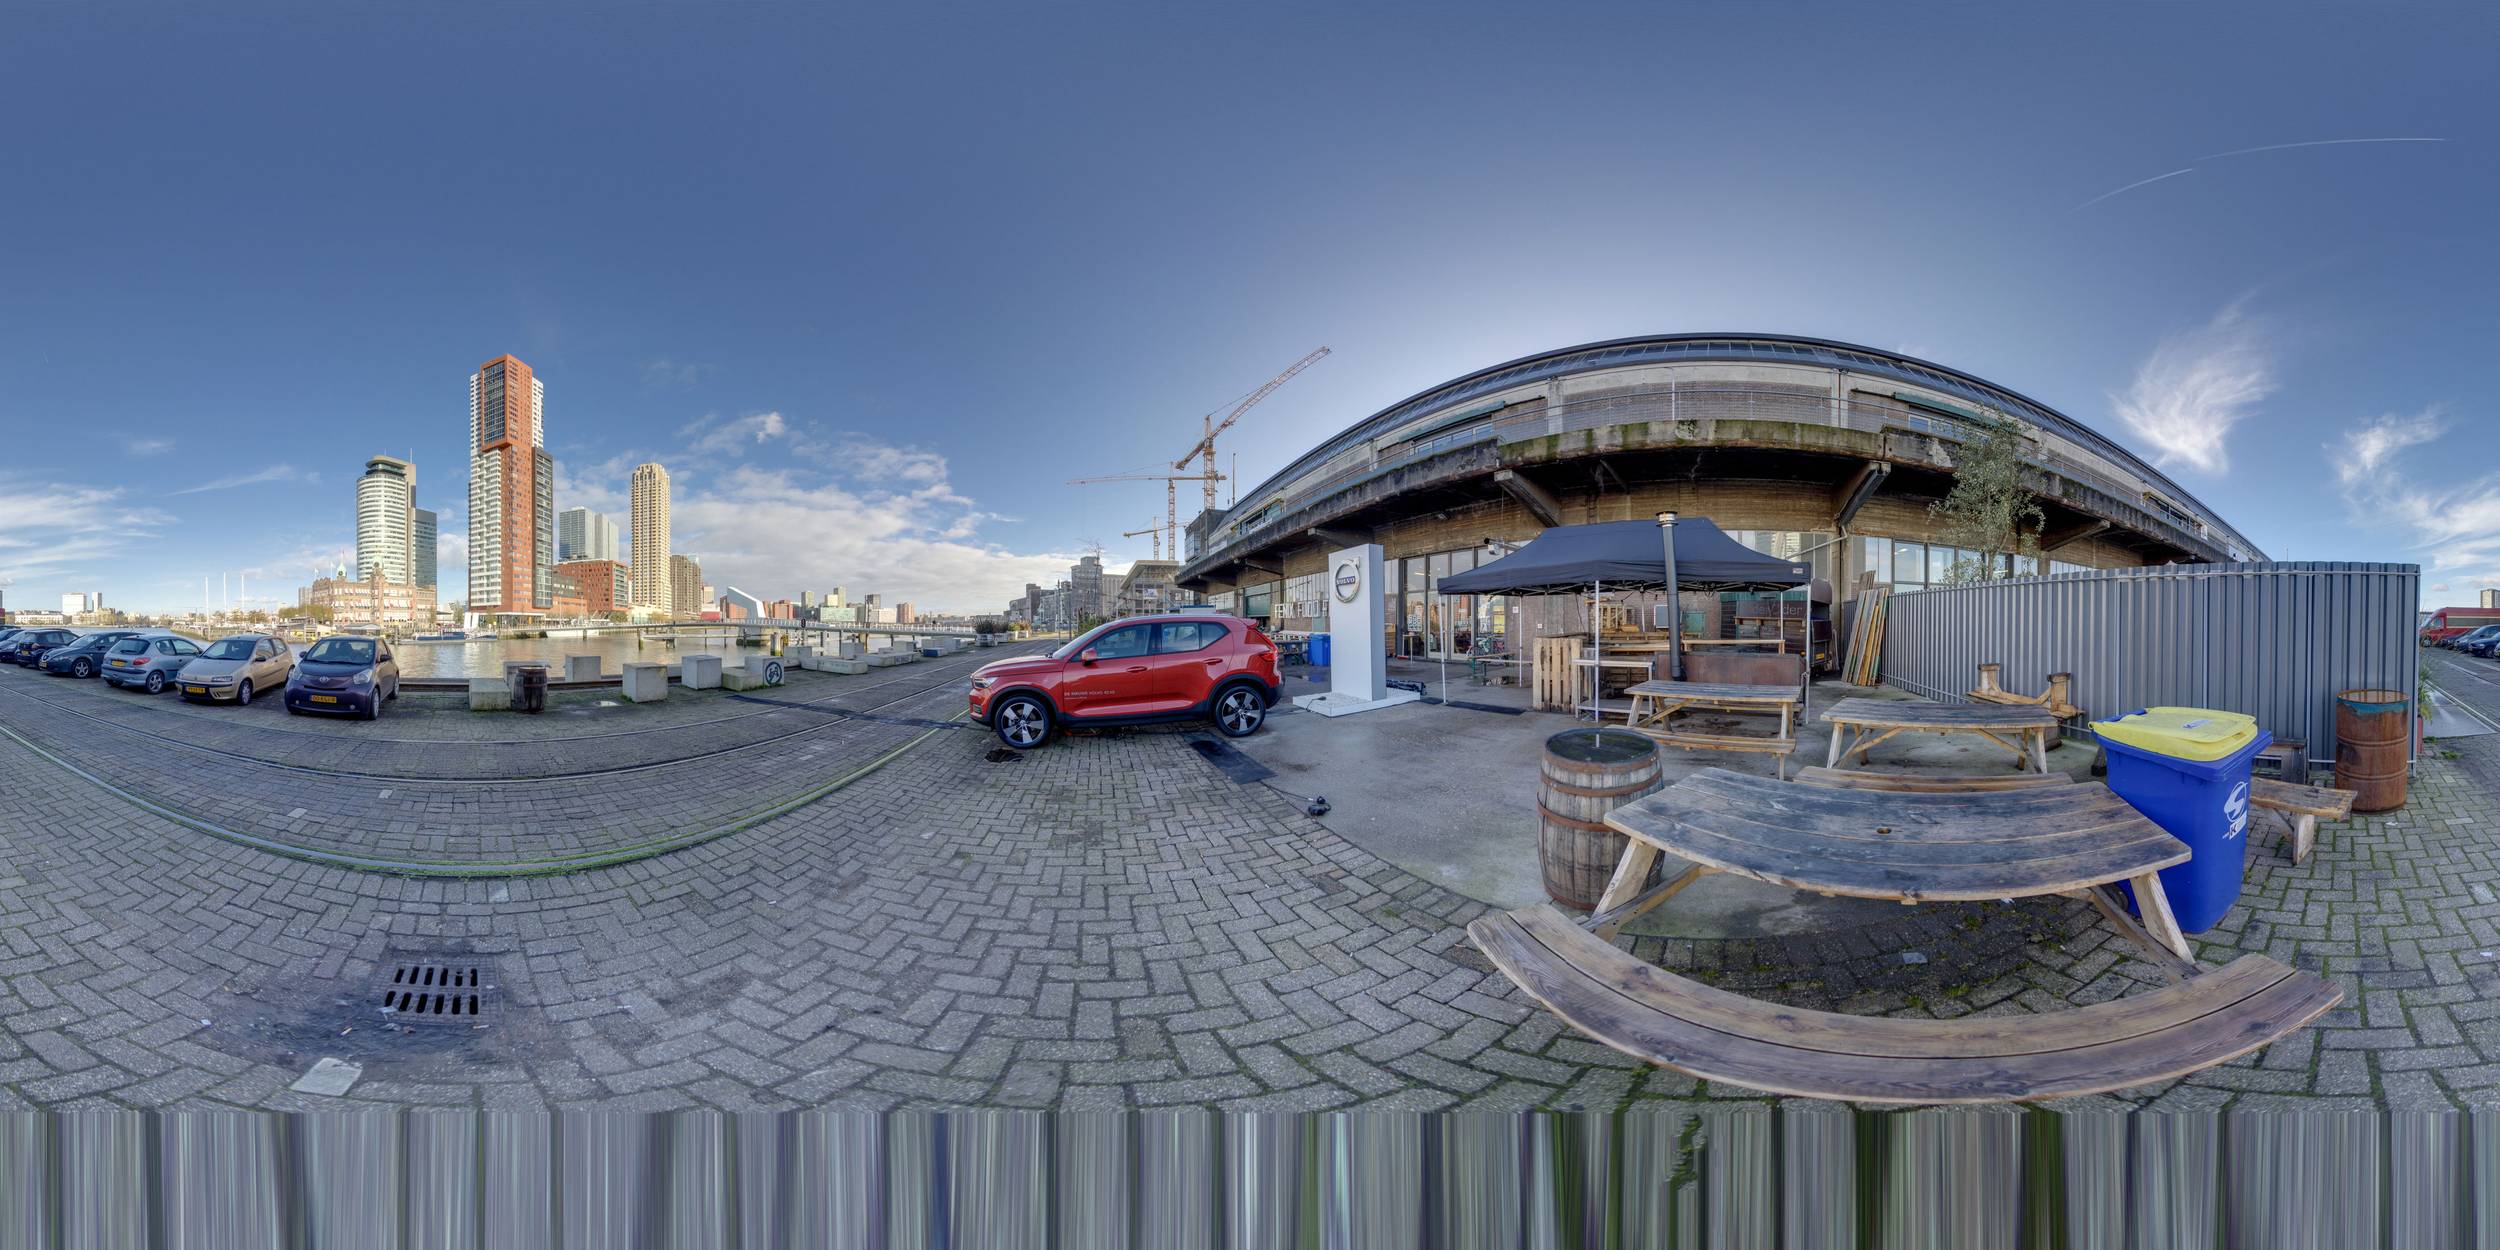 Happix-fotograaf-Ian-Rhoon-Google-Street-View---360-007_Y30WoPg5t.jpg